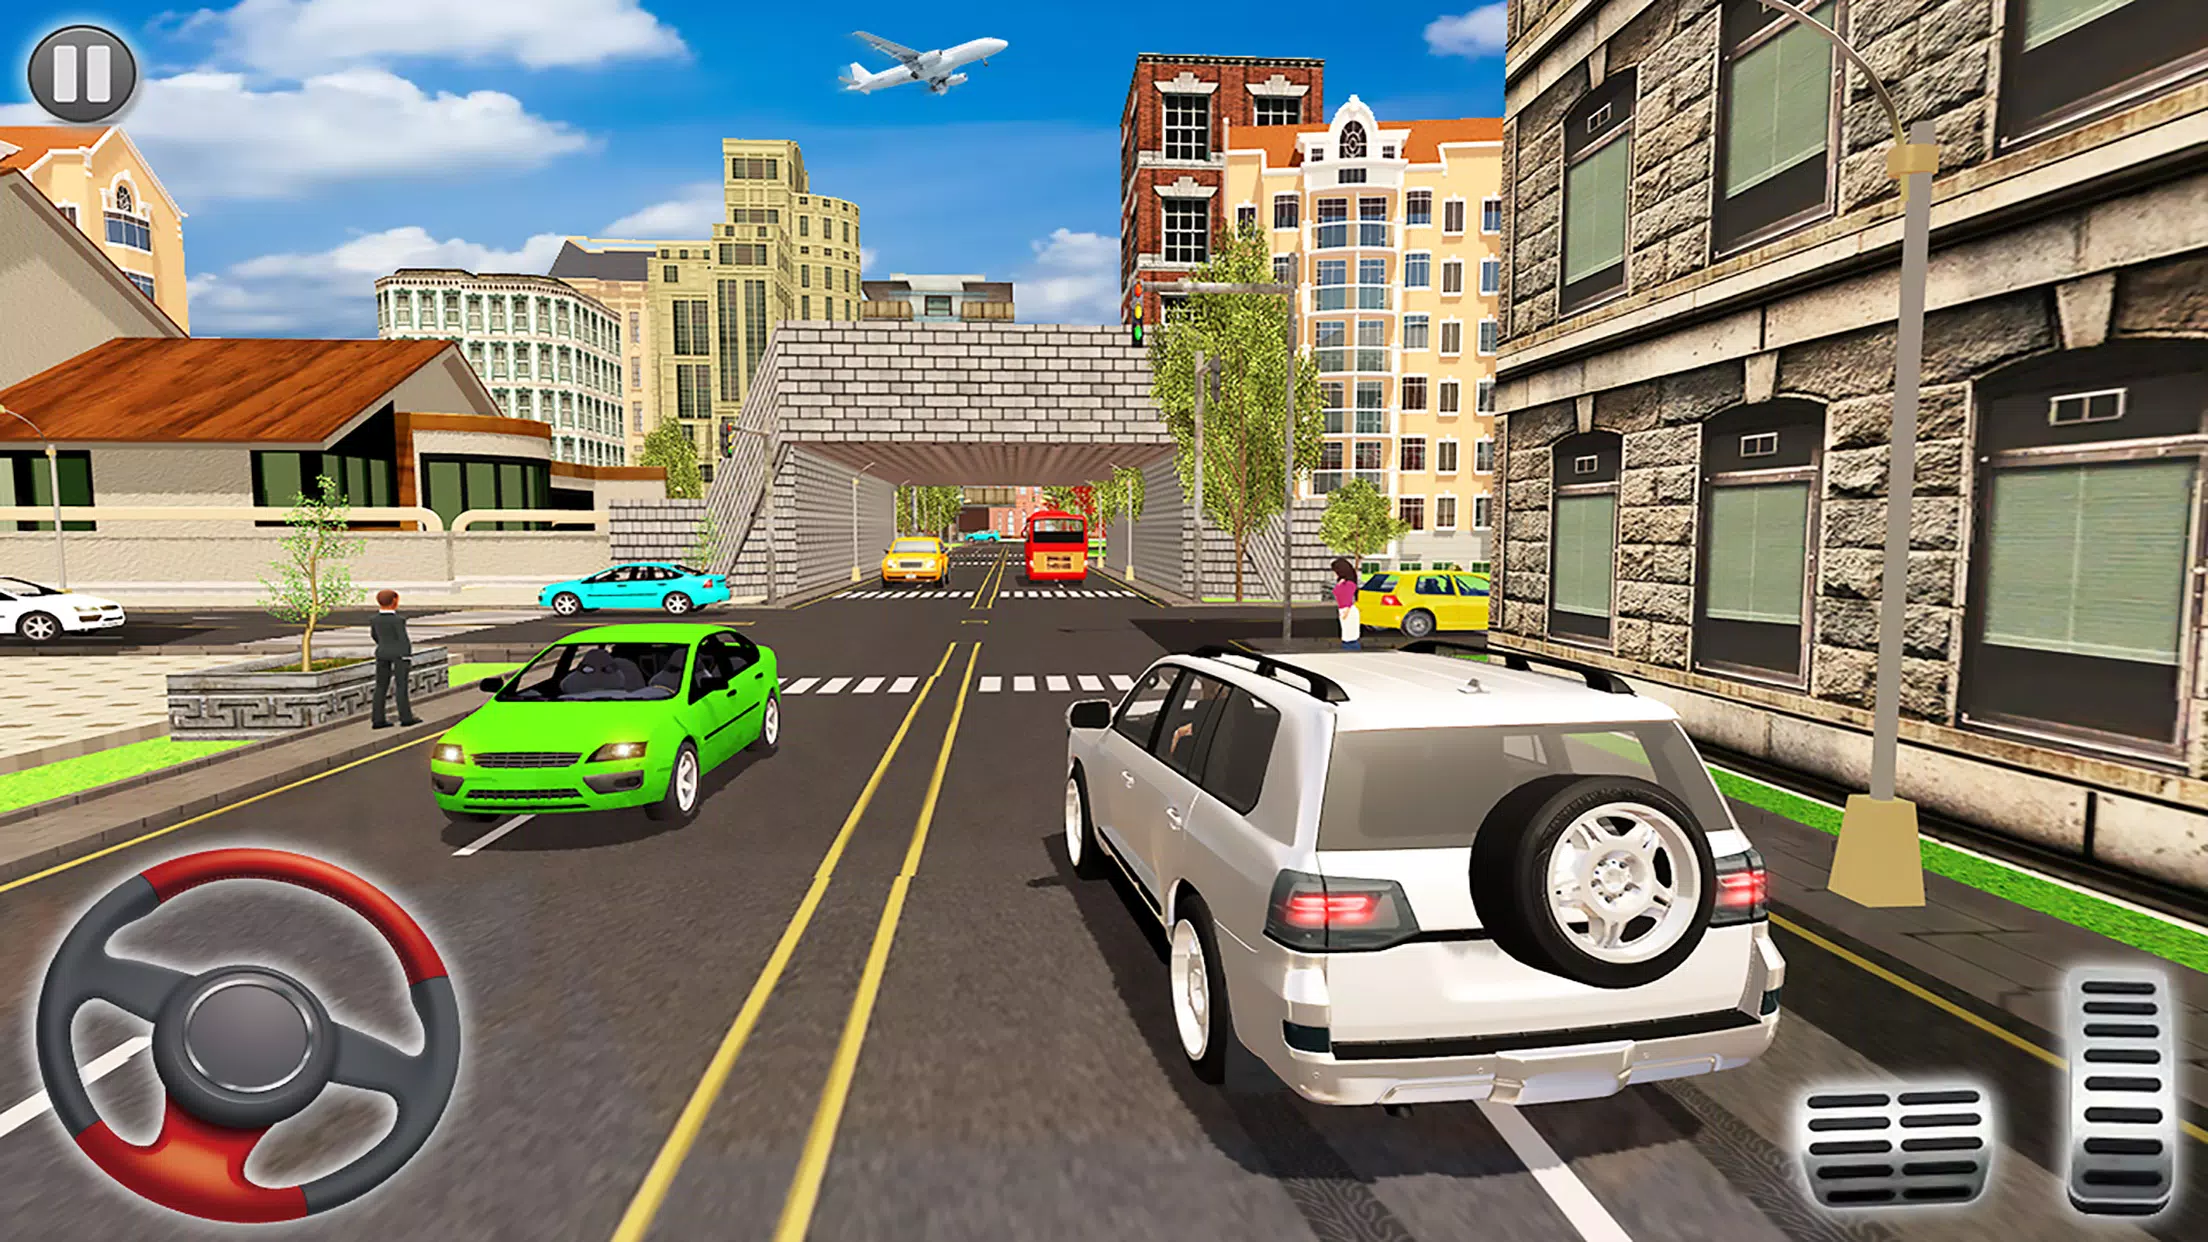 Download do APK de Carro Dirigindo Jogos para Android